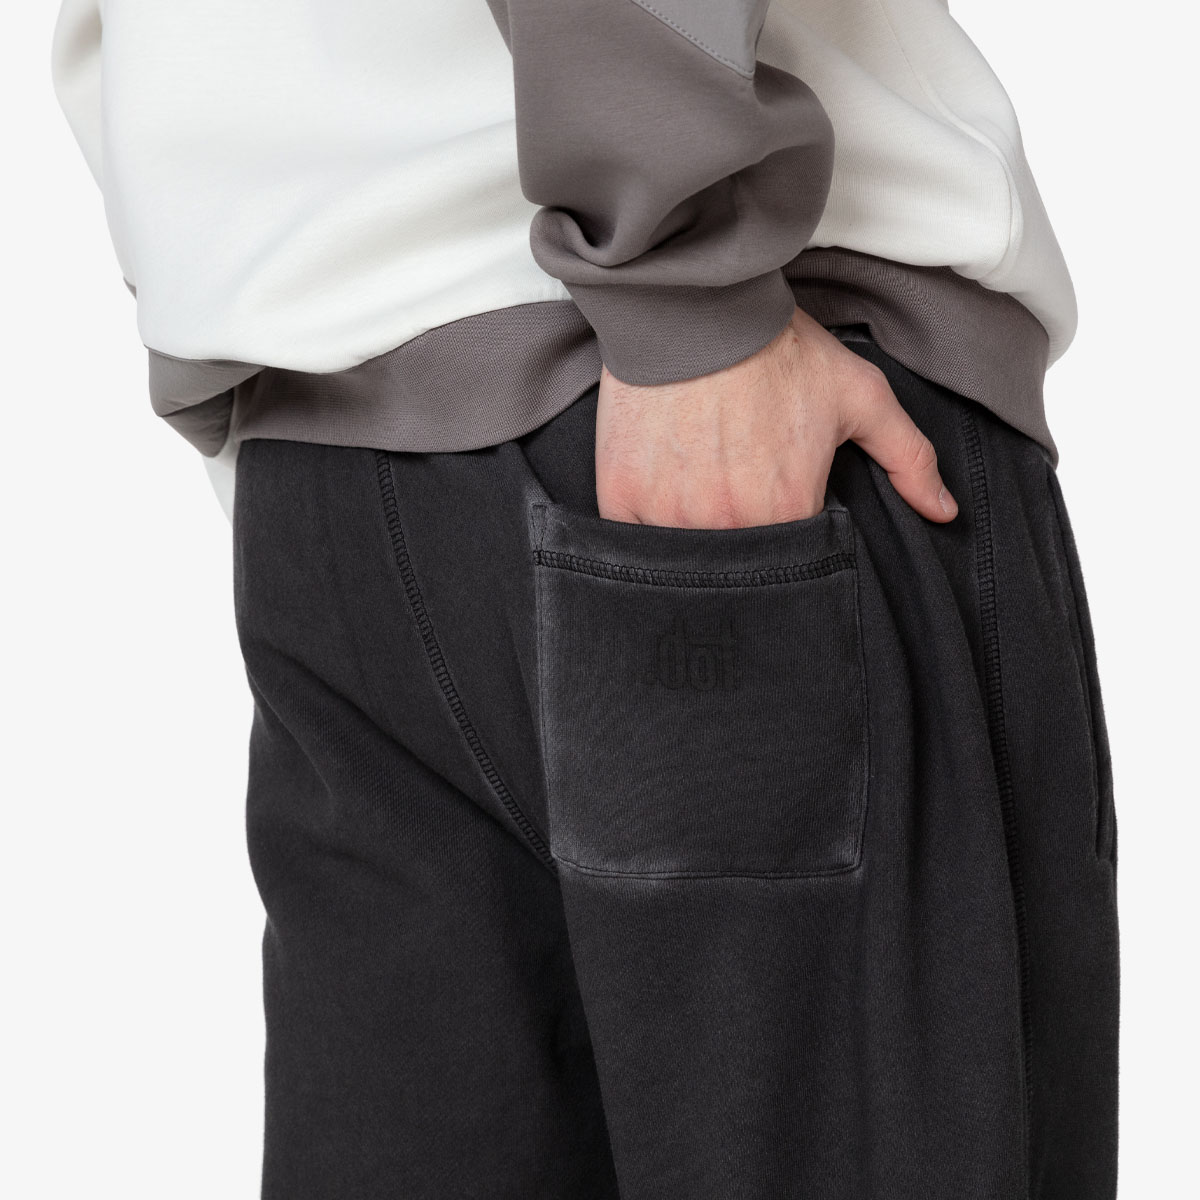 DOT Pantaloni DOT MENS CUFFED PANTS 